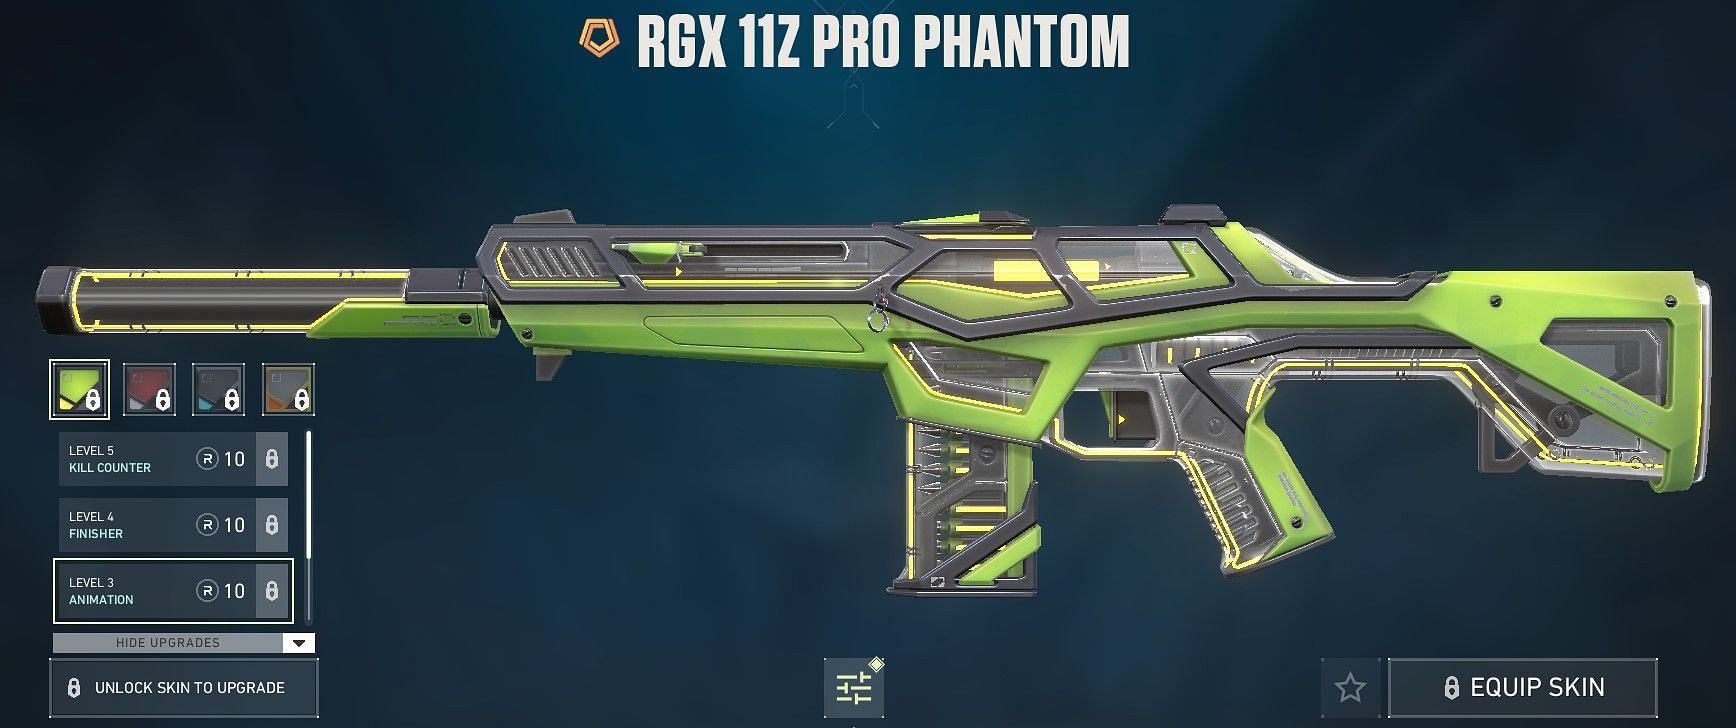 Rgx 11z Pro Phantom (Image via Riot Games)